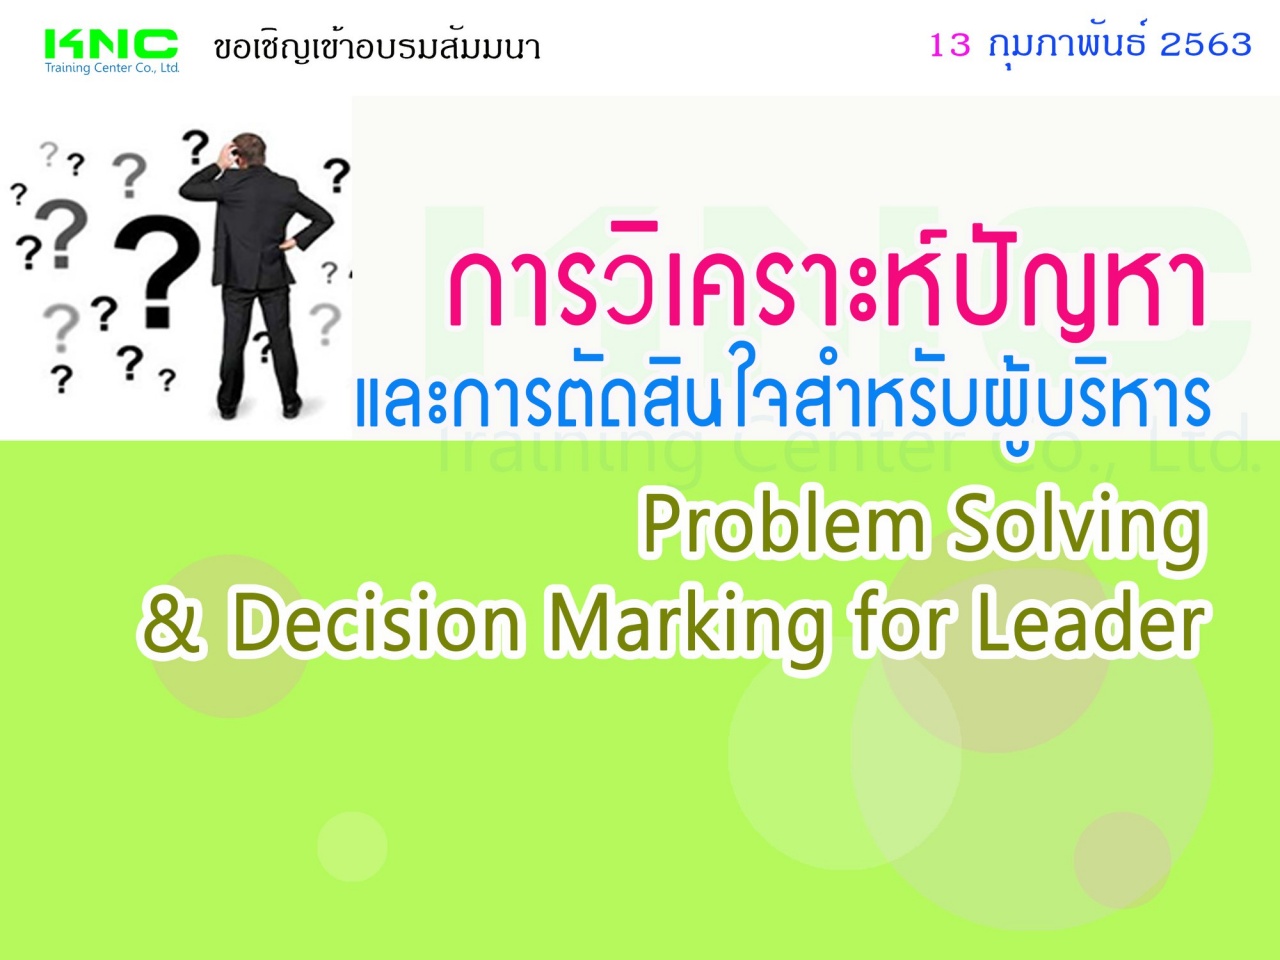 การวิเคราะห์ปัญหาและการตัดสินใจสำหรับผู้บริหาร (Problem Solving & Decision Marking for Leader)